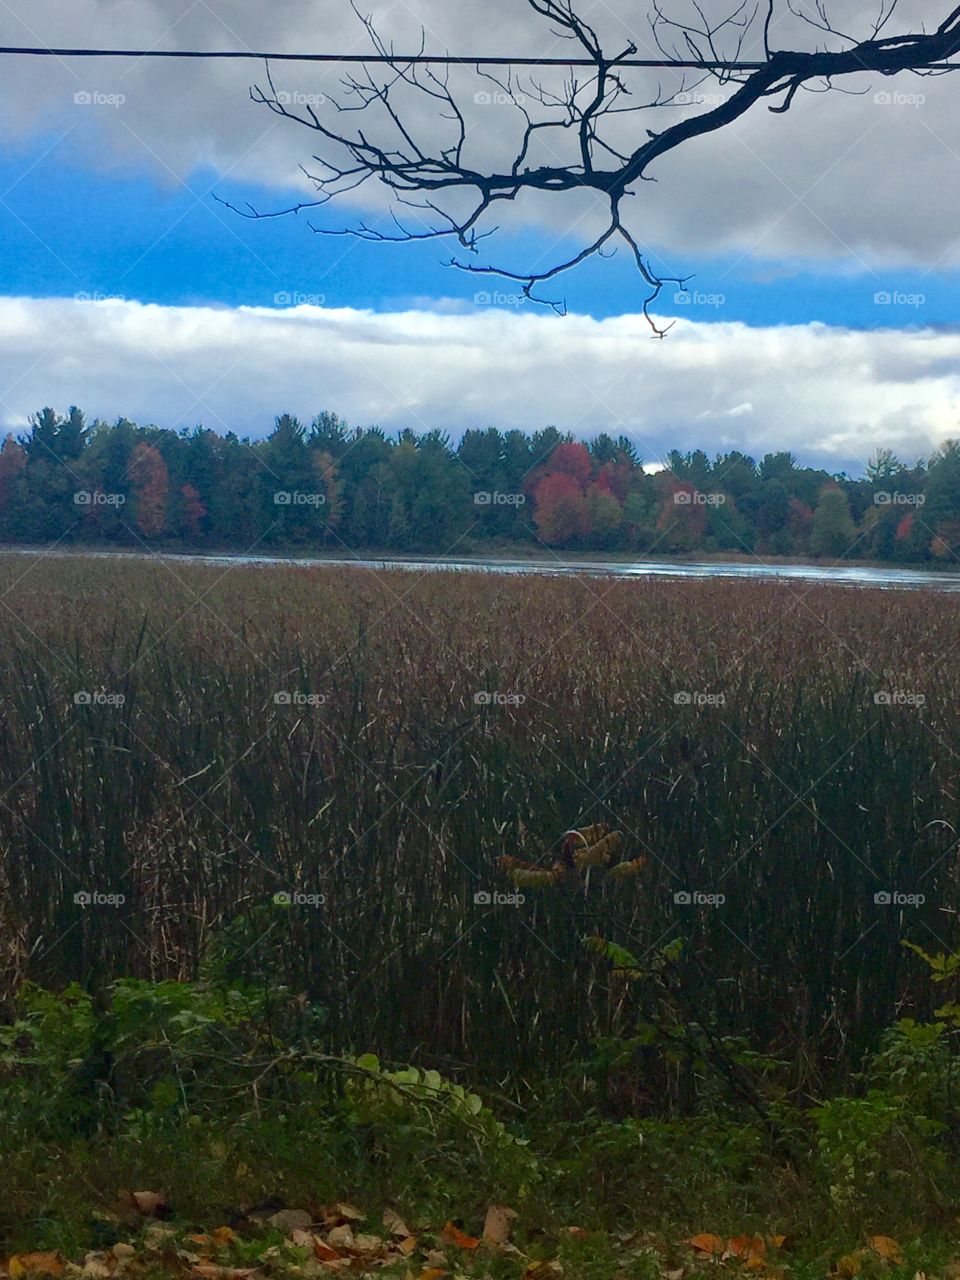 Fall marsh in Michigan 